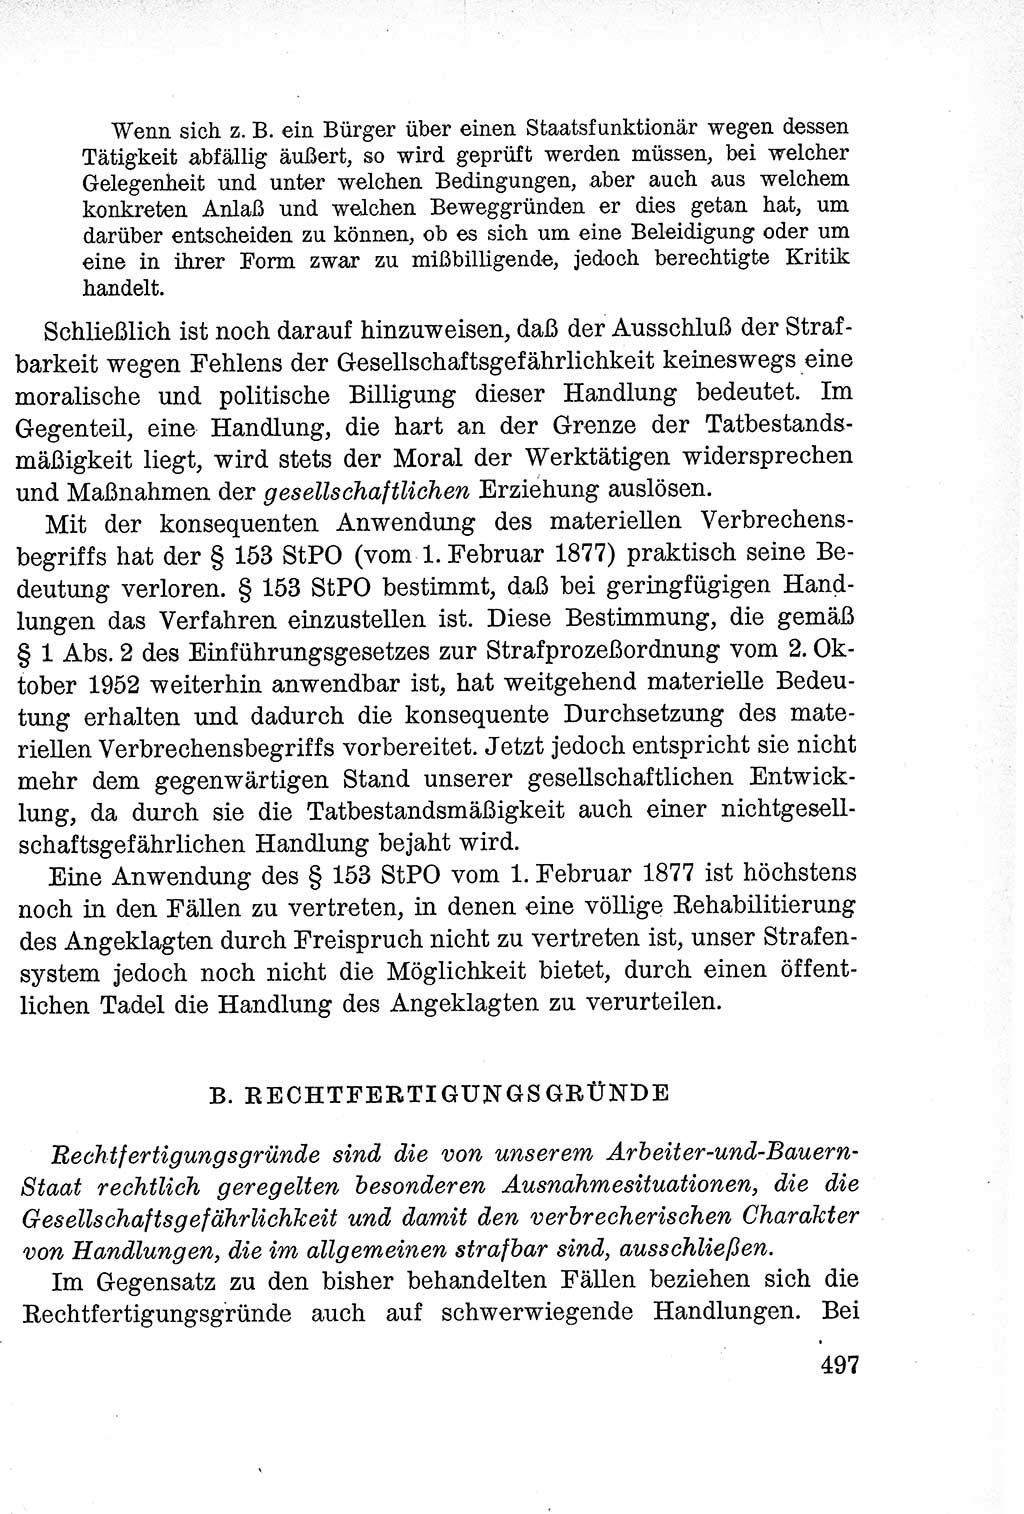 Lehrbuch des Strafrechts der Deutschen Demokratischen Republik (DDR), Allgemeiner Teil 1957, Seite 497 (Lb. Strafr. DDR AT 1957, S. 497)